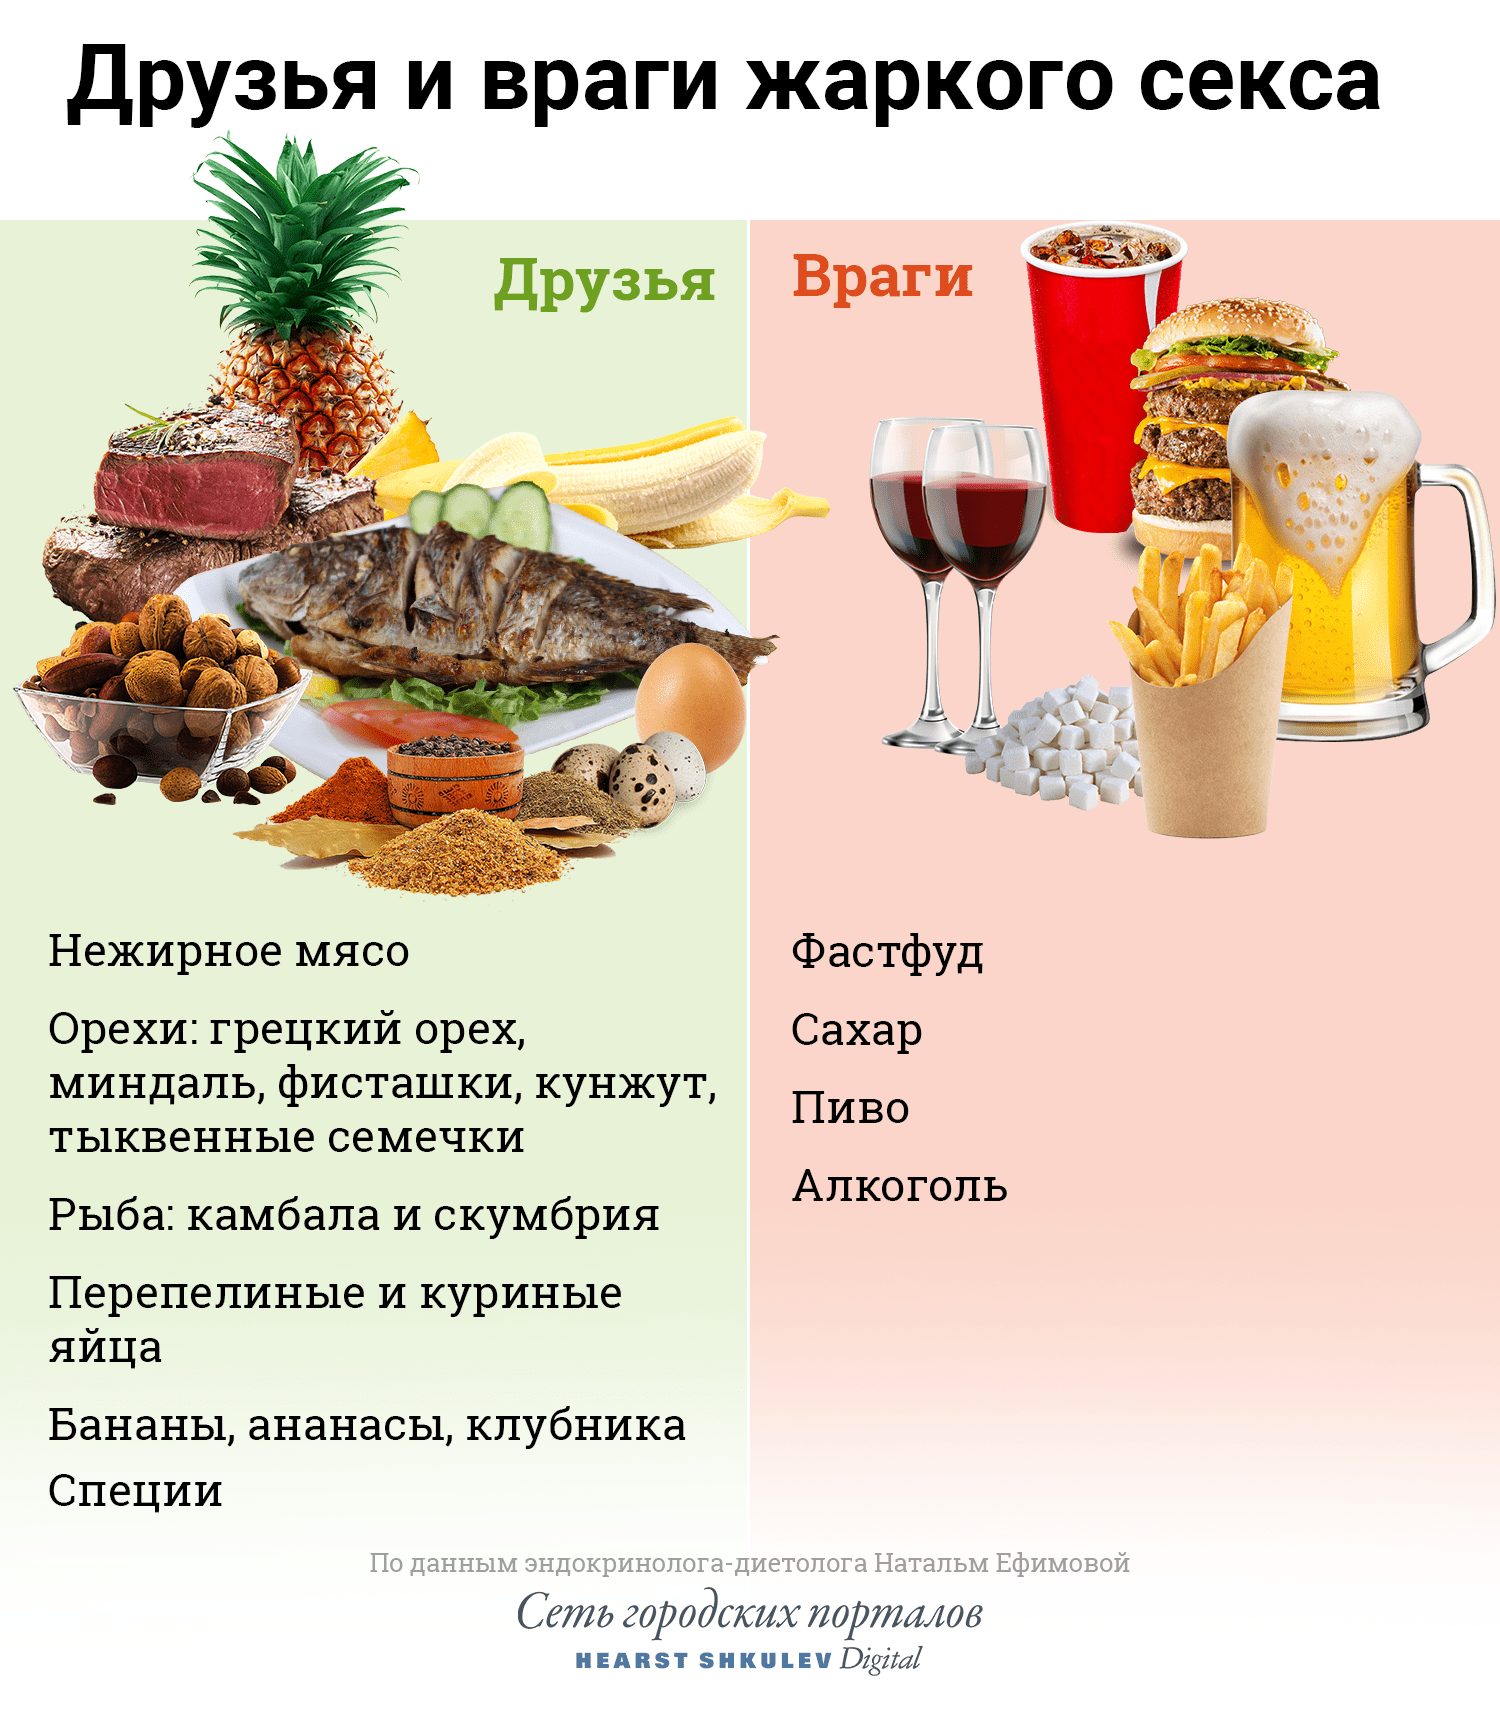 Топ-5 продуктов для отличного секса - Новости на afisha-piknik.ru